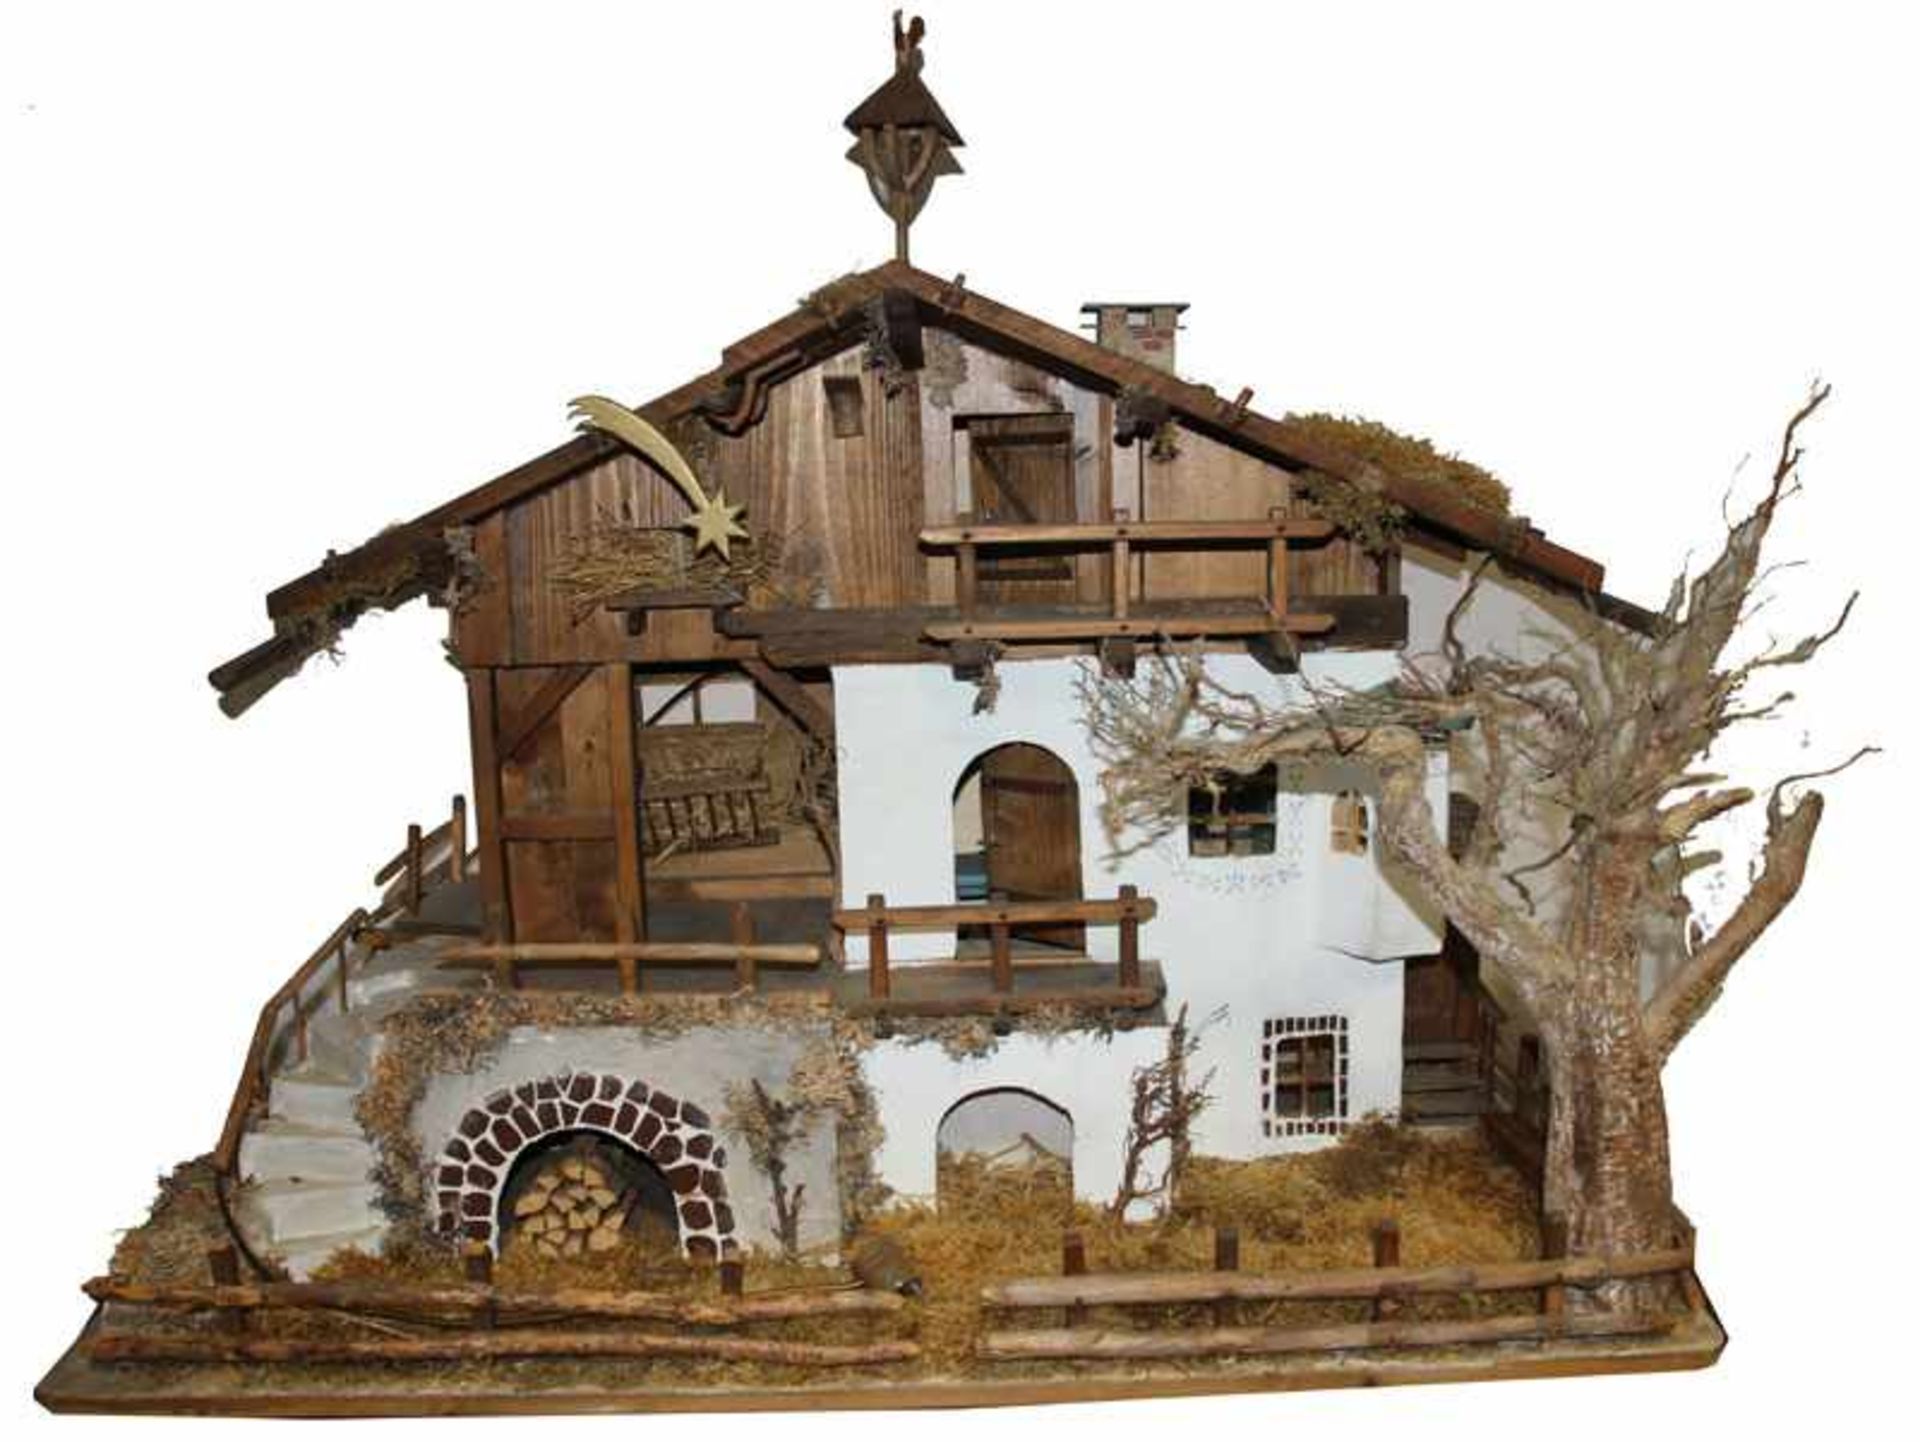 Krippenstall in Form eines Bauernhauses, schöne Handarbeit, H 100 cm, auf Platte montiert, B 120 cm,